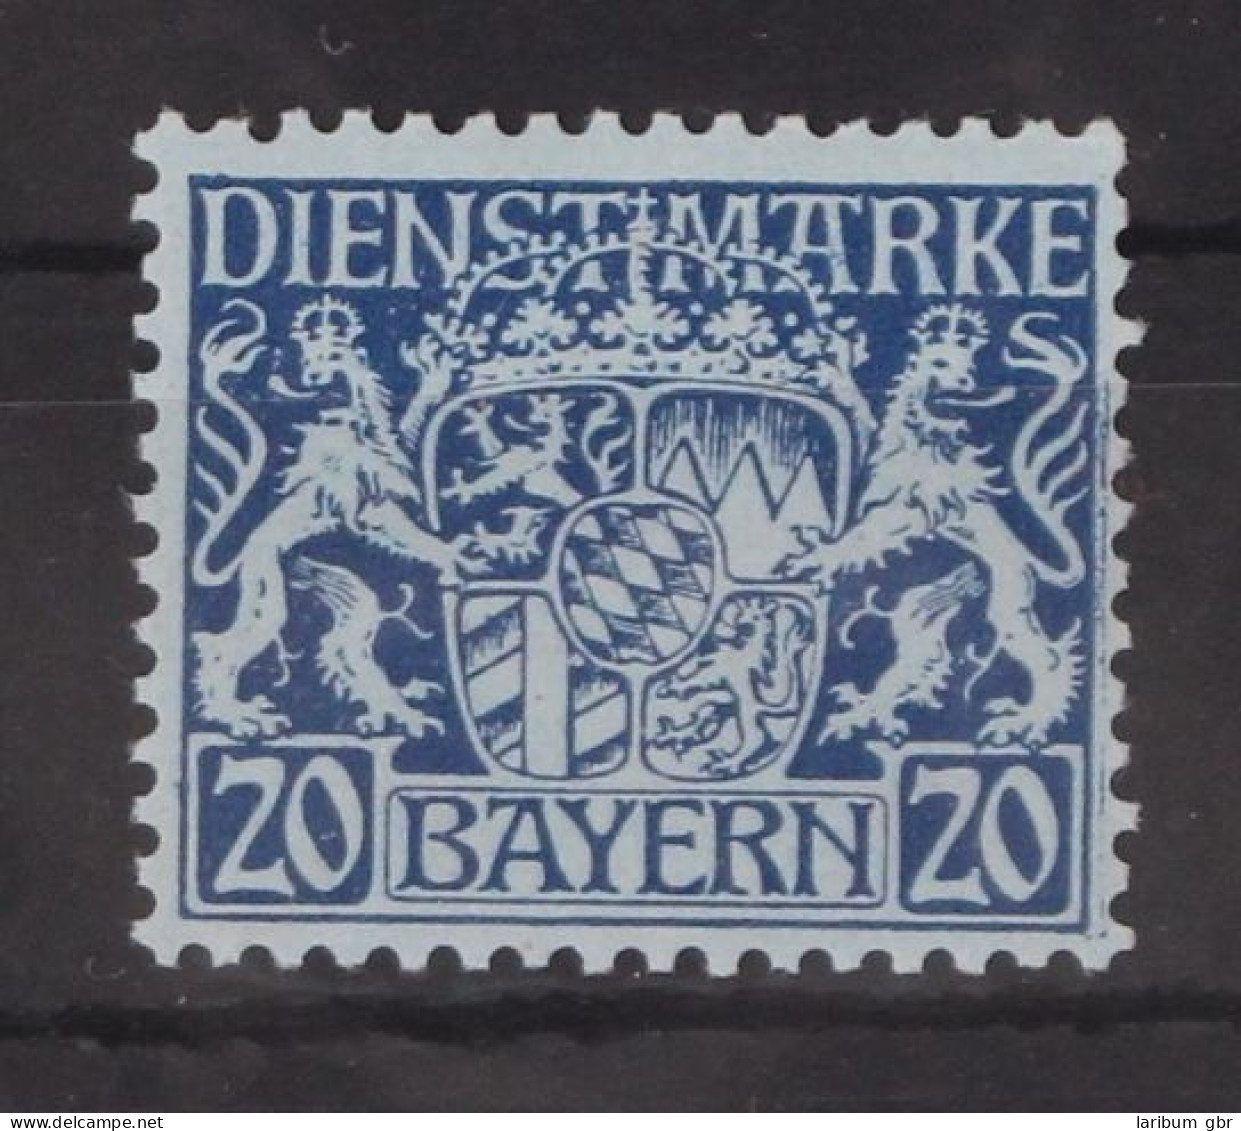 Bayern Dienstmarken 20 Postfrisch #GM097 - Nuevos